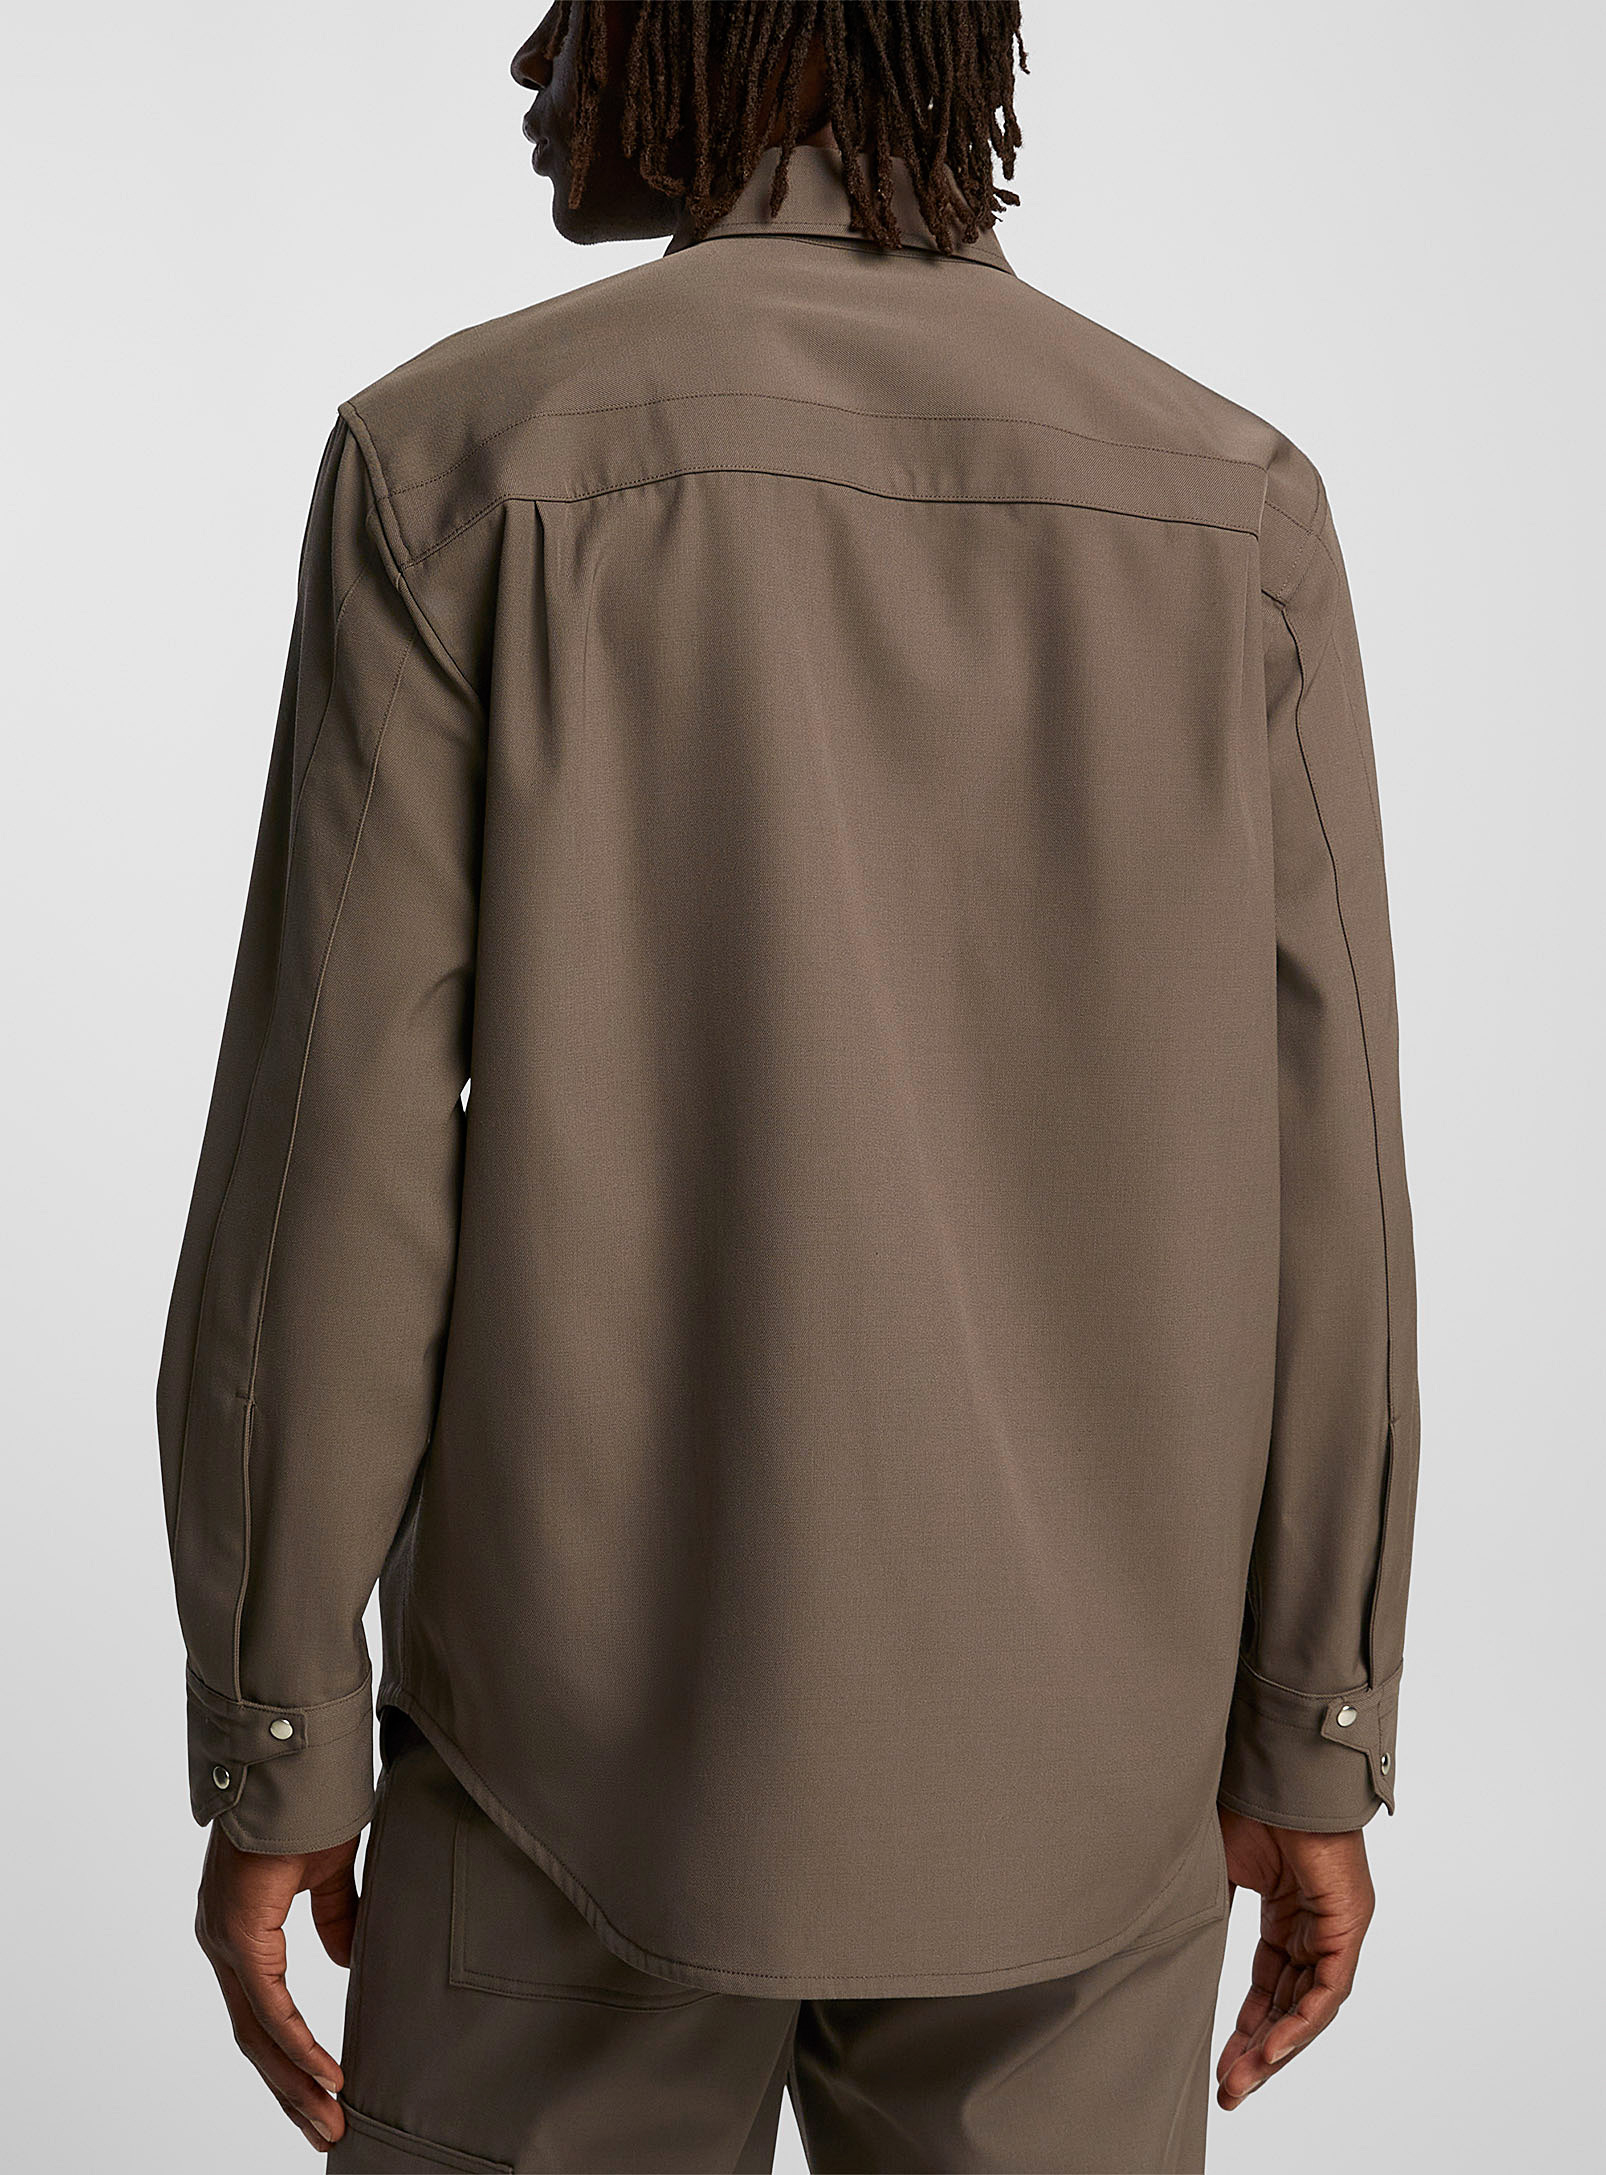 Helmut Lang - La chemise militaire poches plaquées